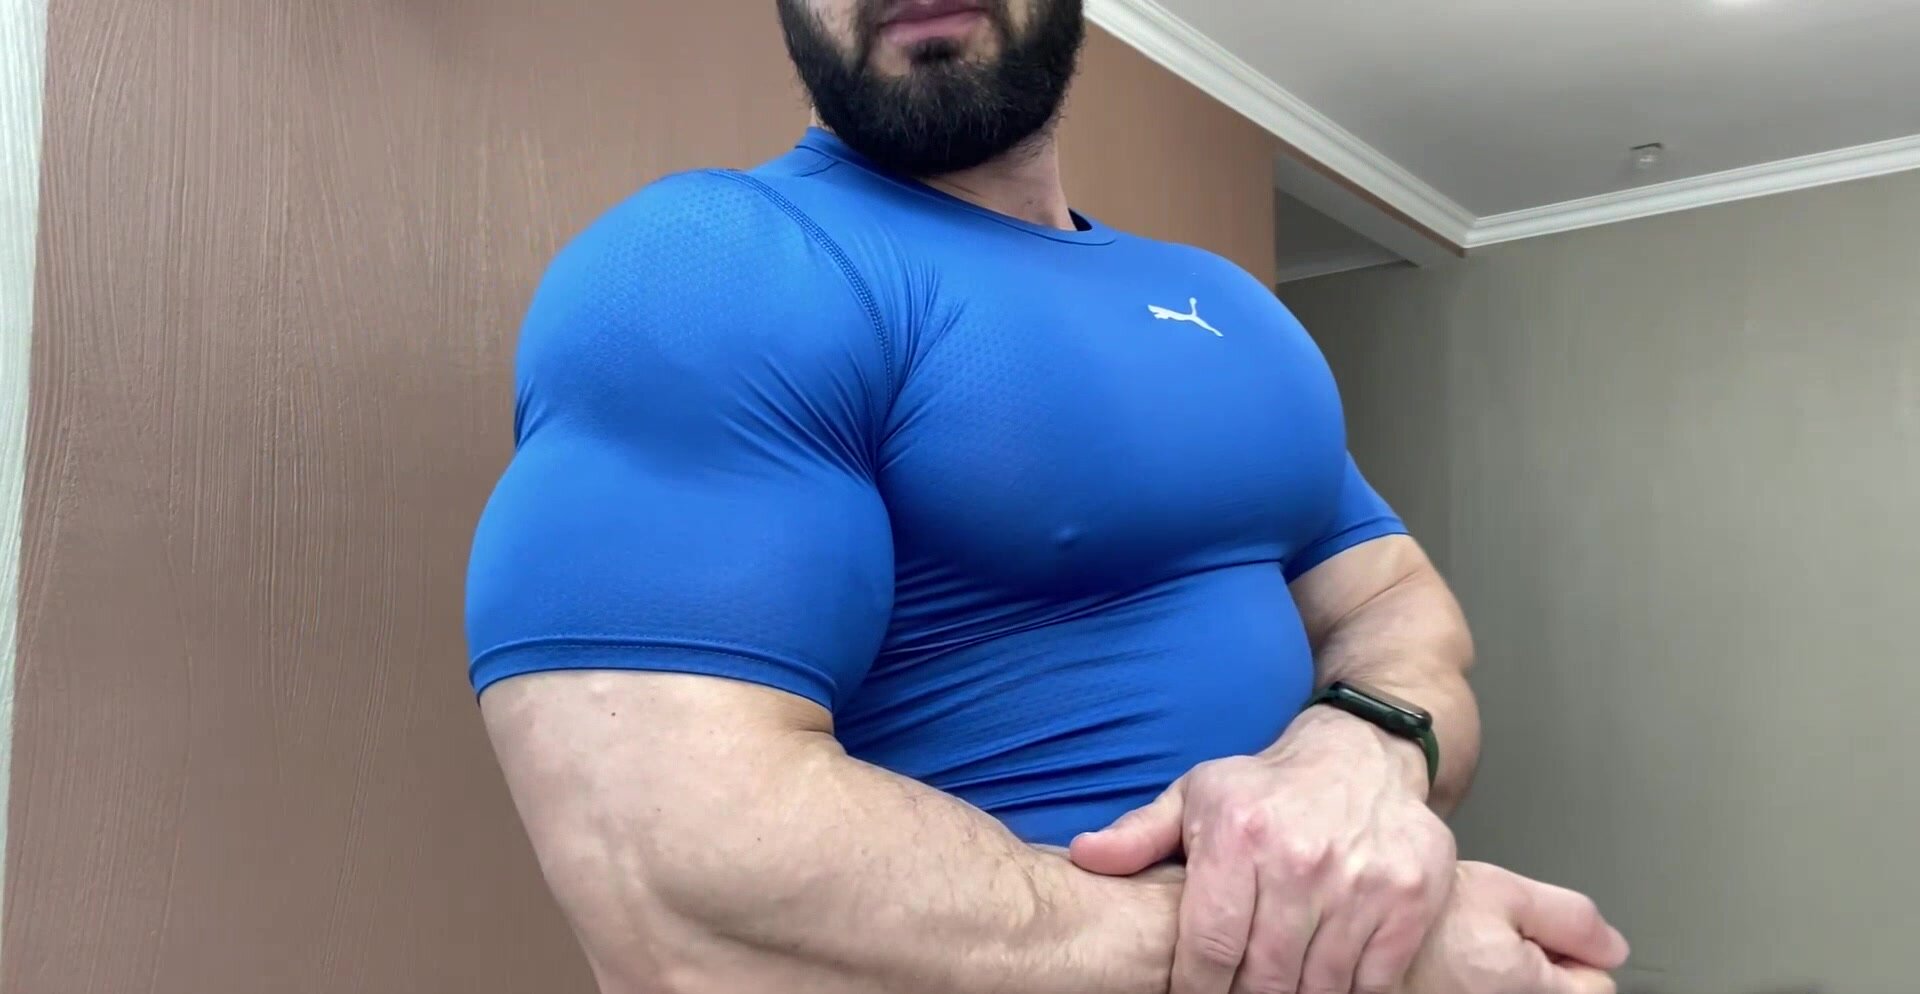 Bulging  muscles